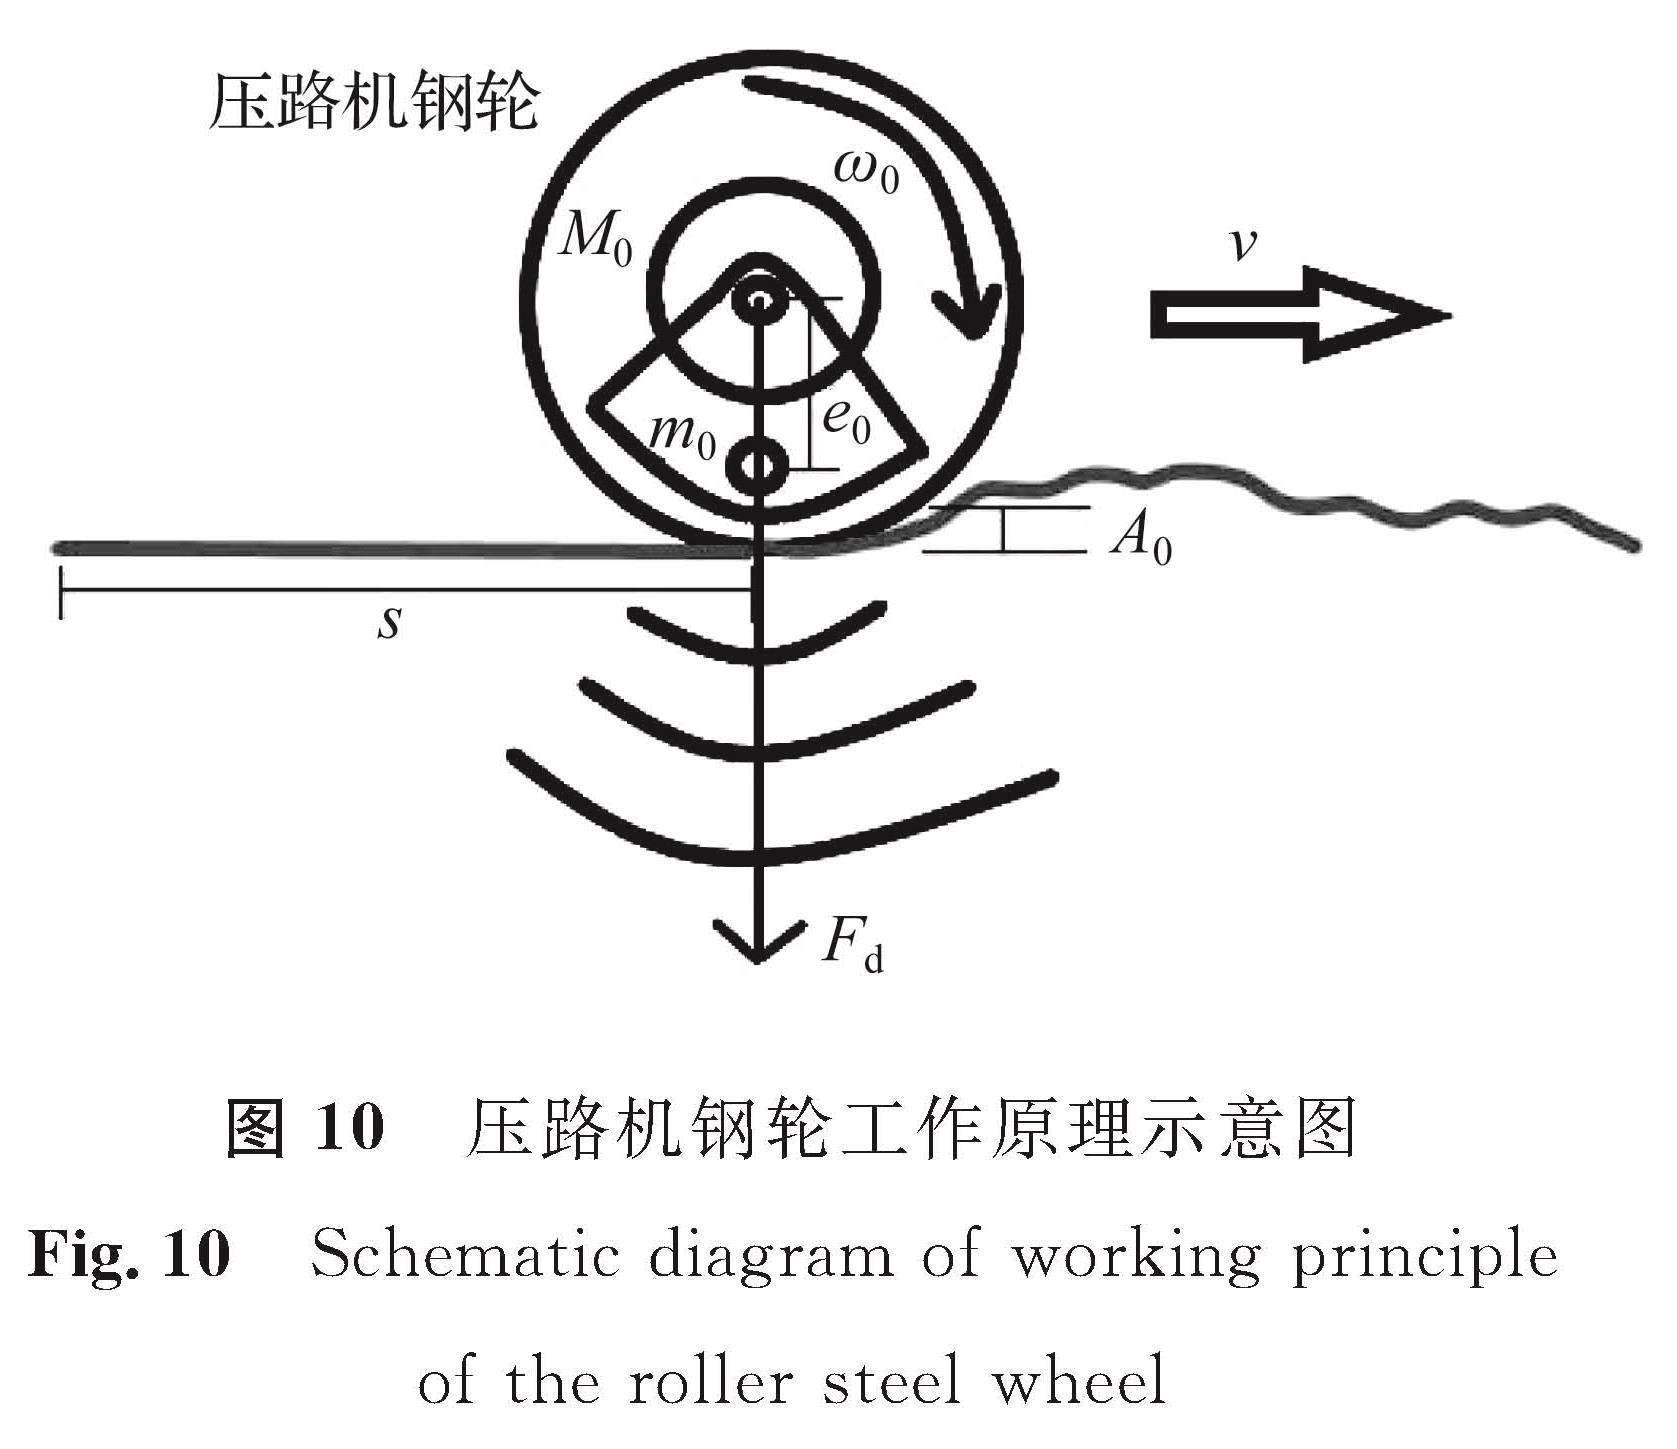 图 10 压路机钢轮工作原理示意图<br/>Fig.10 Schematic diagram of working principle of the roller steel wheel